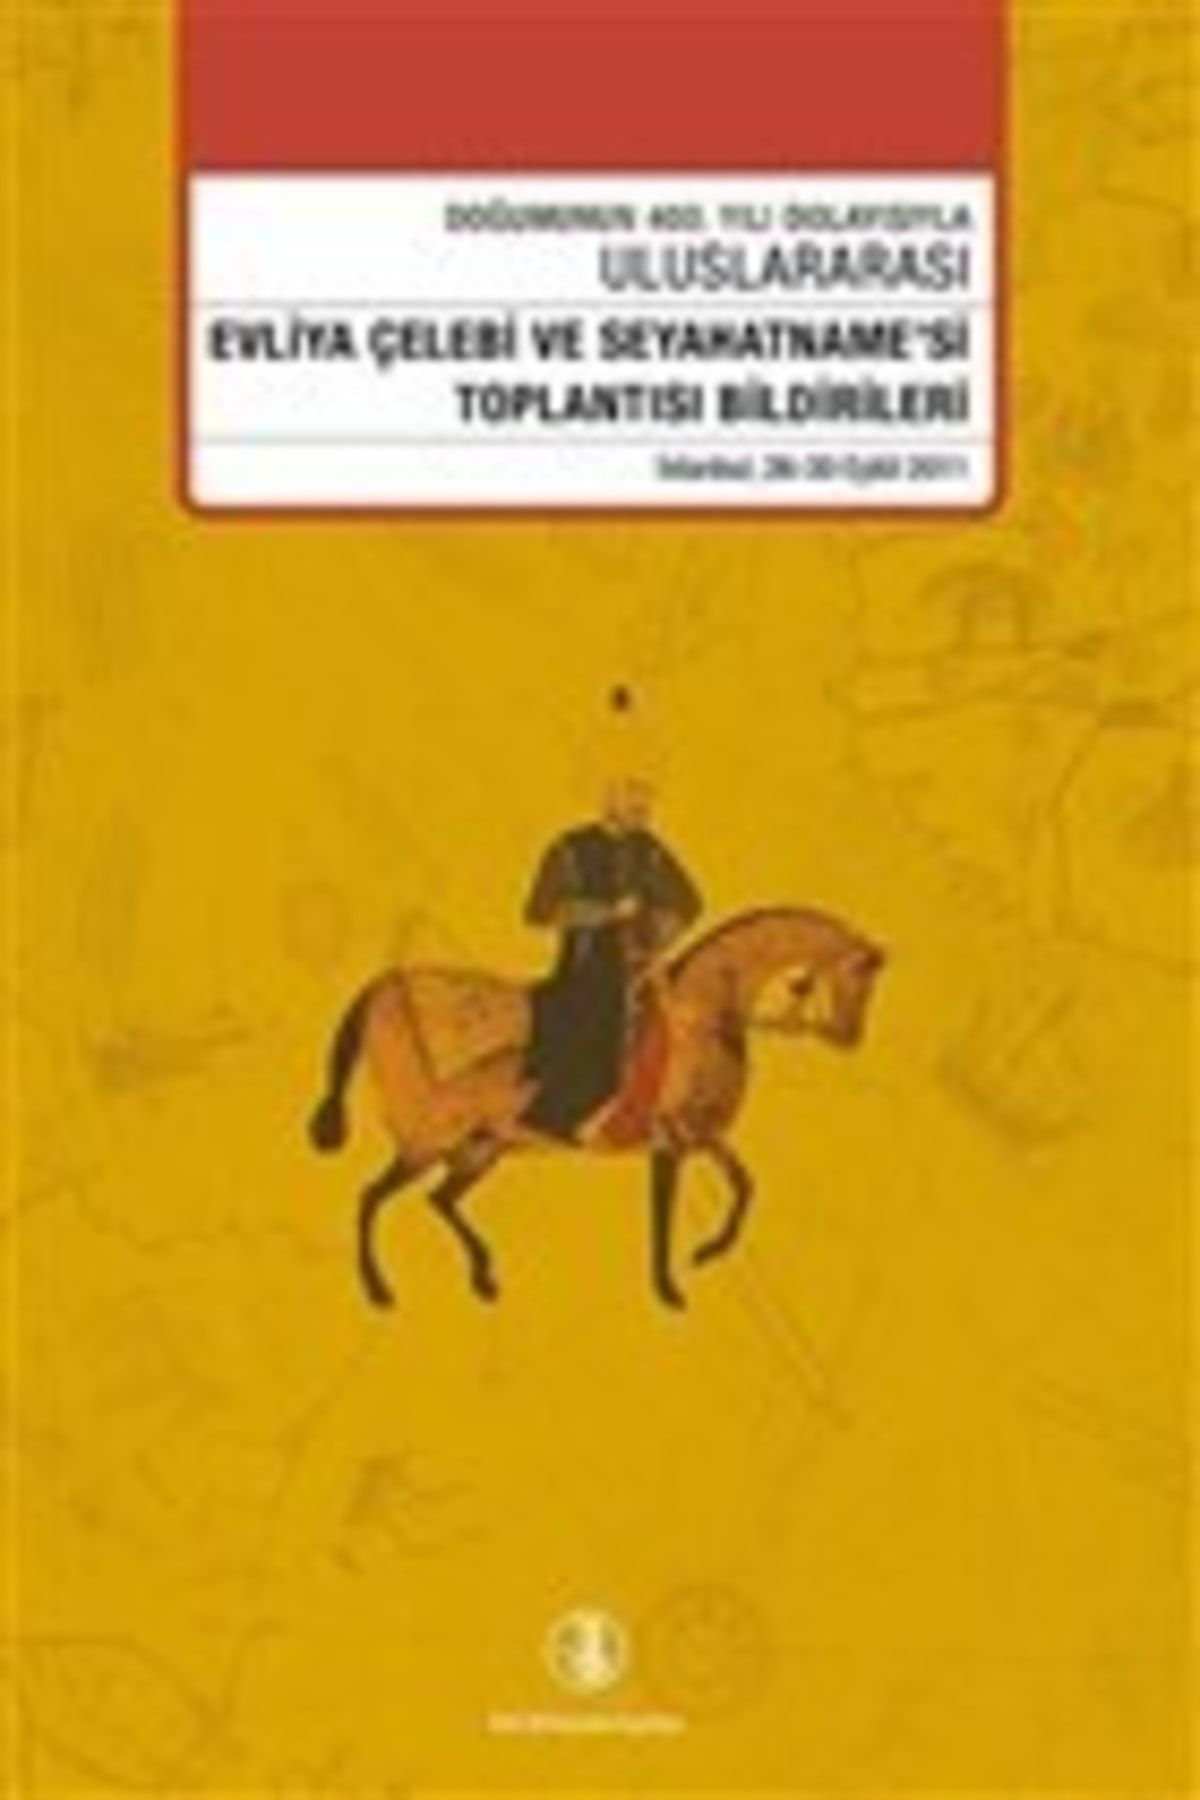 Türk Dil Kurumu Yayınları Evliya Çelebi Ve Seyahatname'si Toplantısı Bildirileri 26 - 30 Eylül 2011